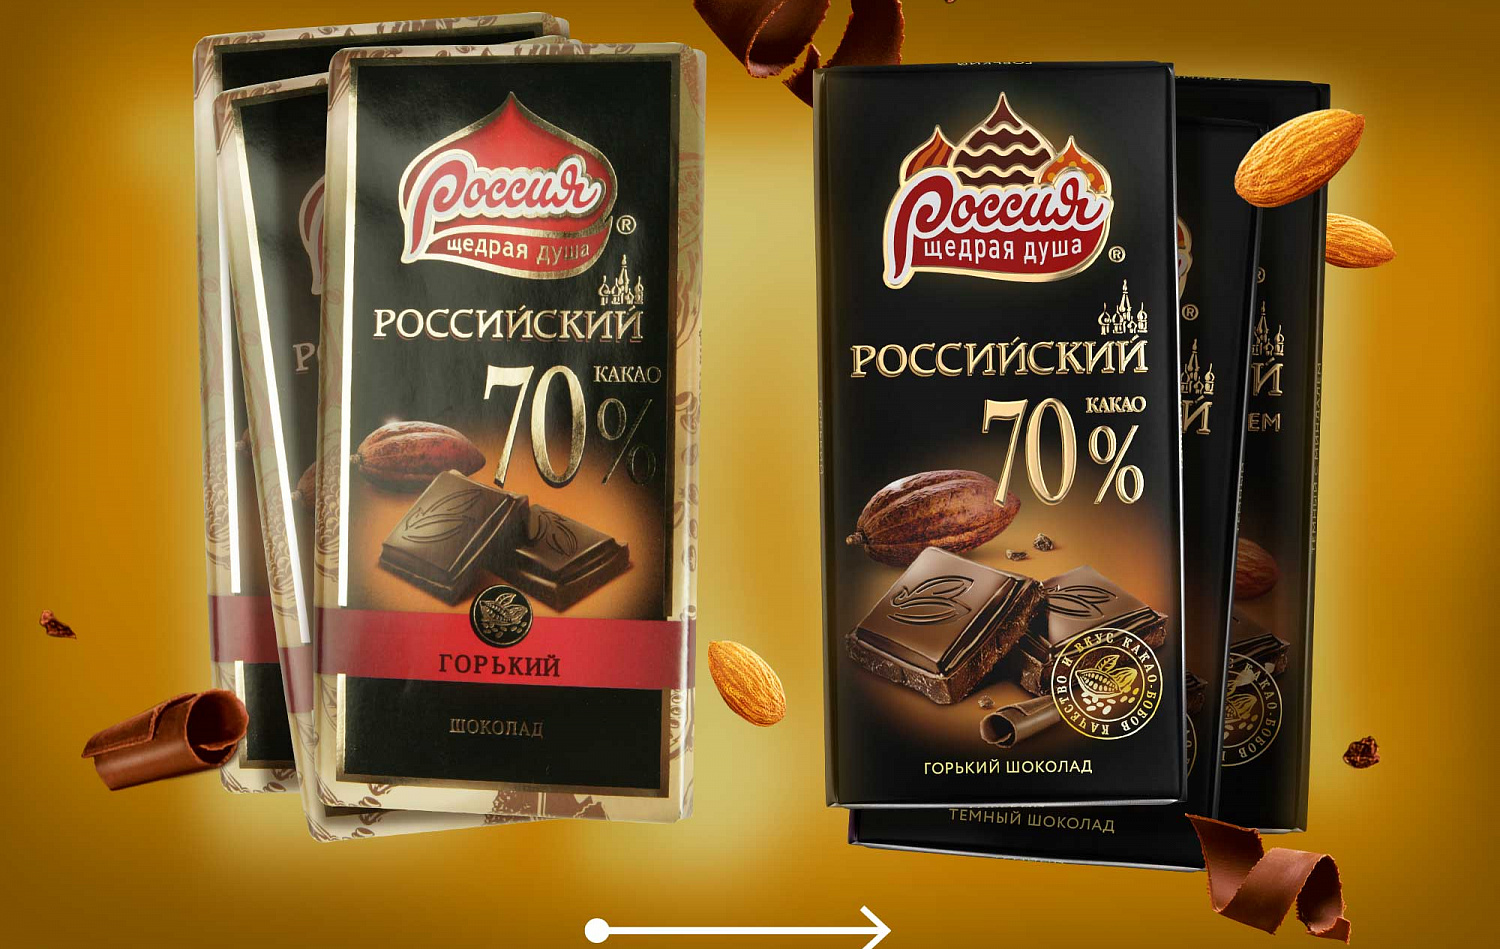 «Россия» – Щедрая Душа!® - Портфолио Depot